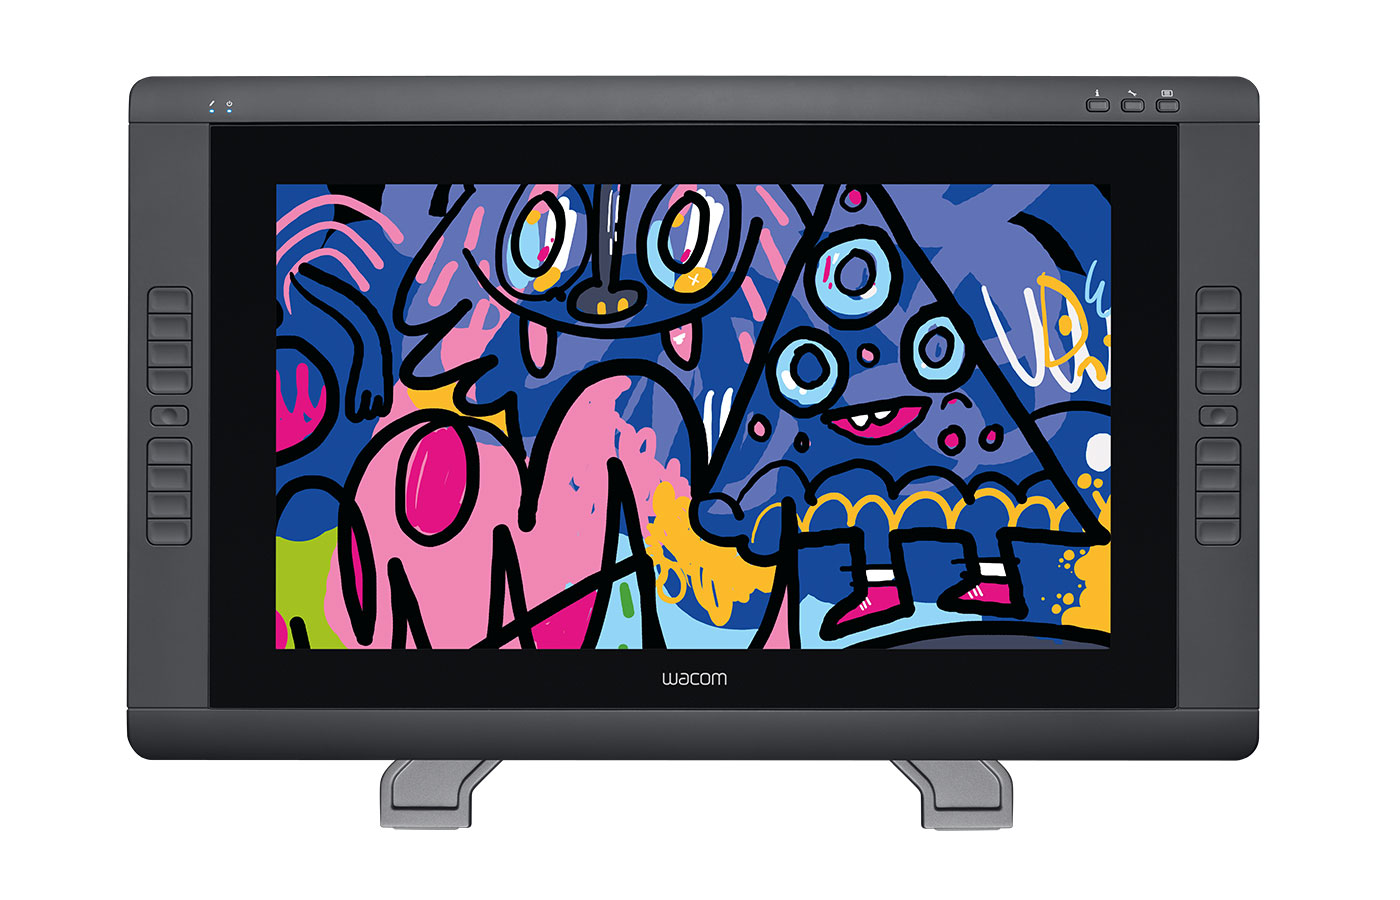 Crea, diseña y digitaliza todo tipo de creaciones gráficas gracias a los monitores interactivos de Wacom - Colombia